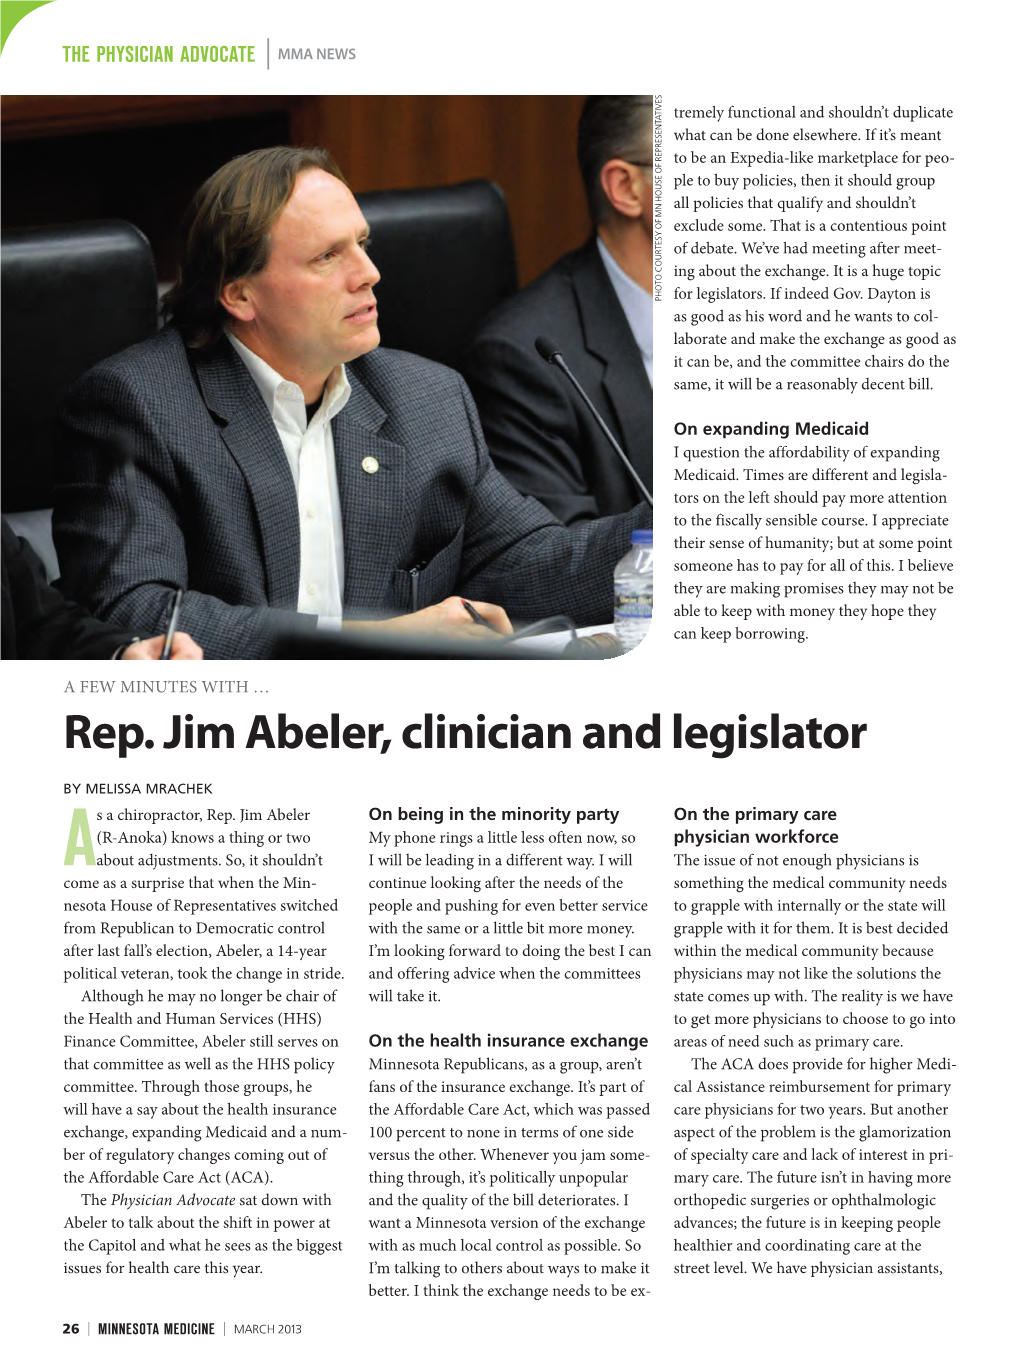 Rep. Jim Abeler, Clinician and Legislator